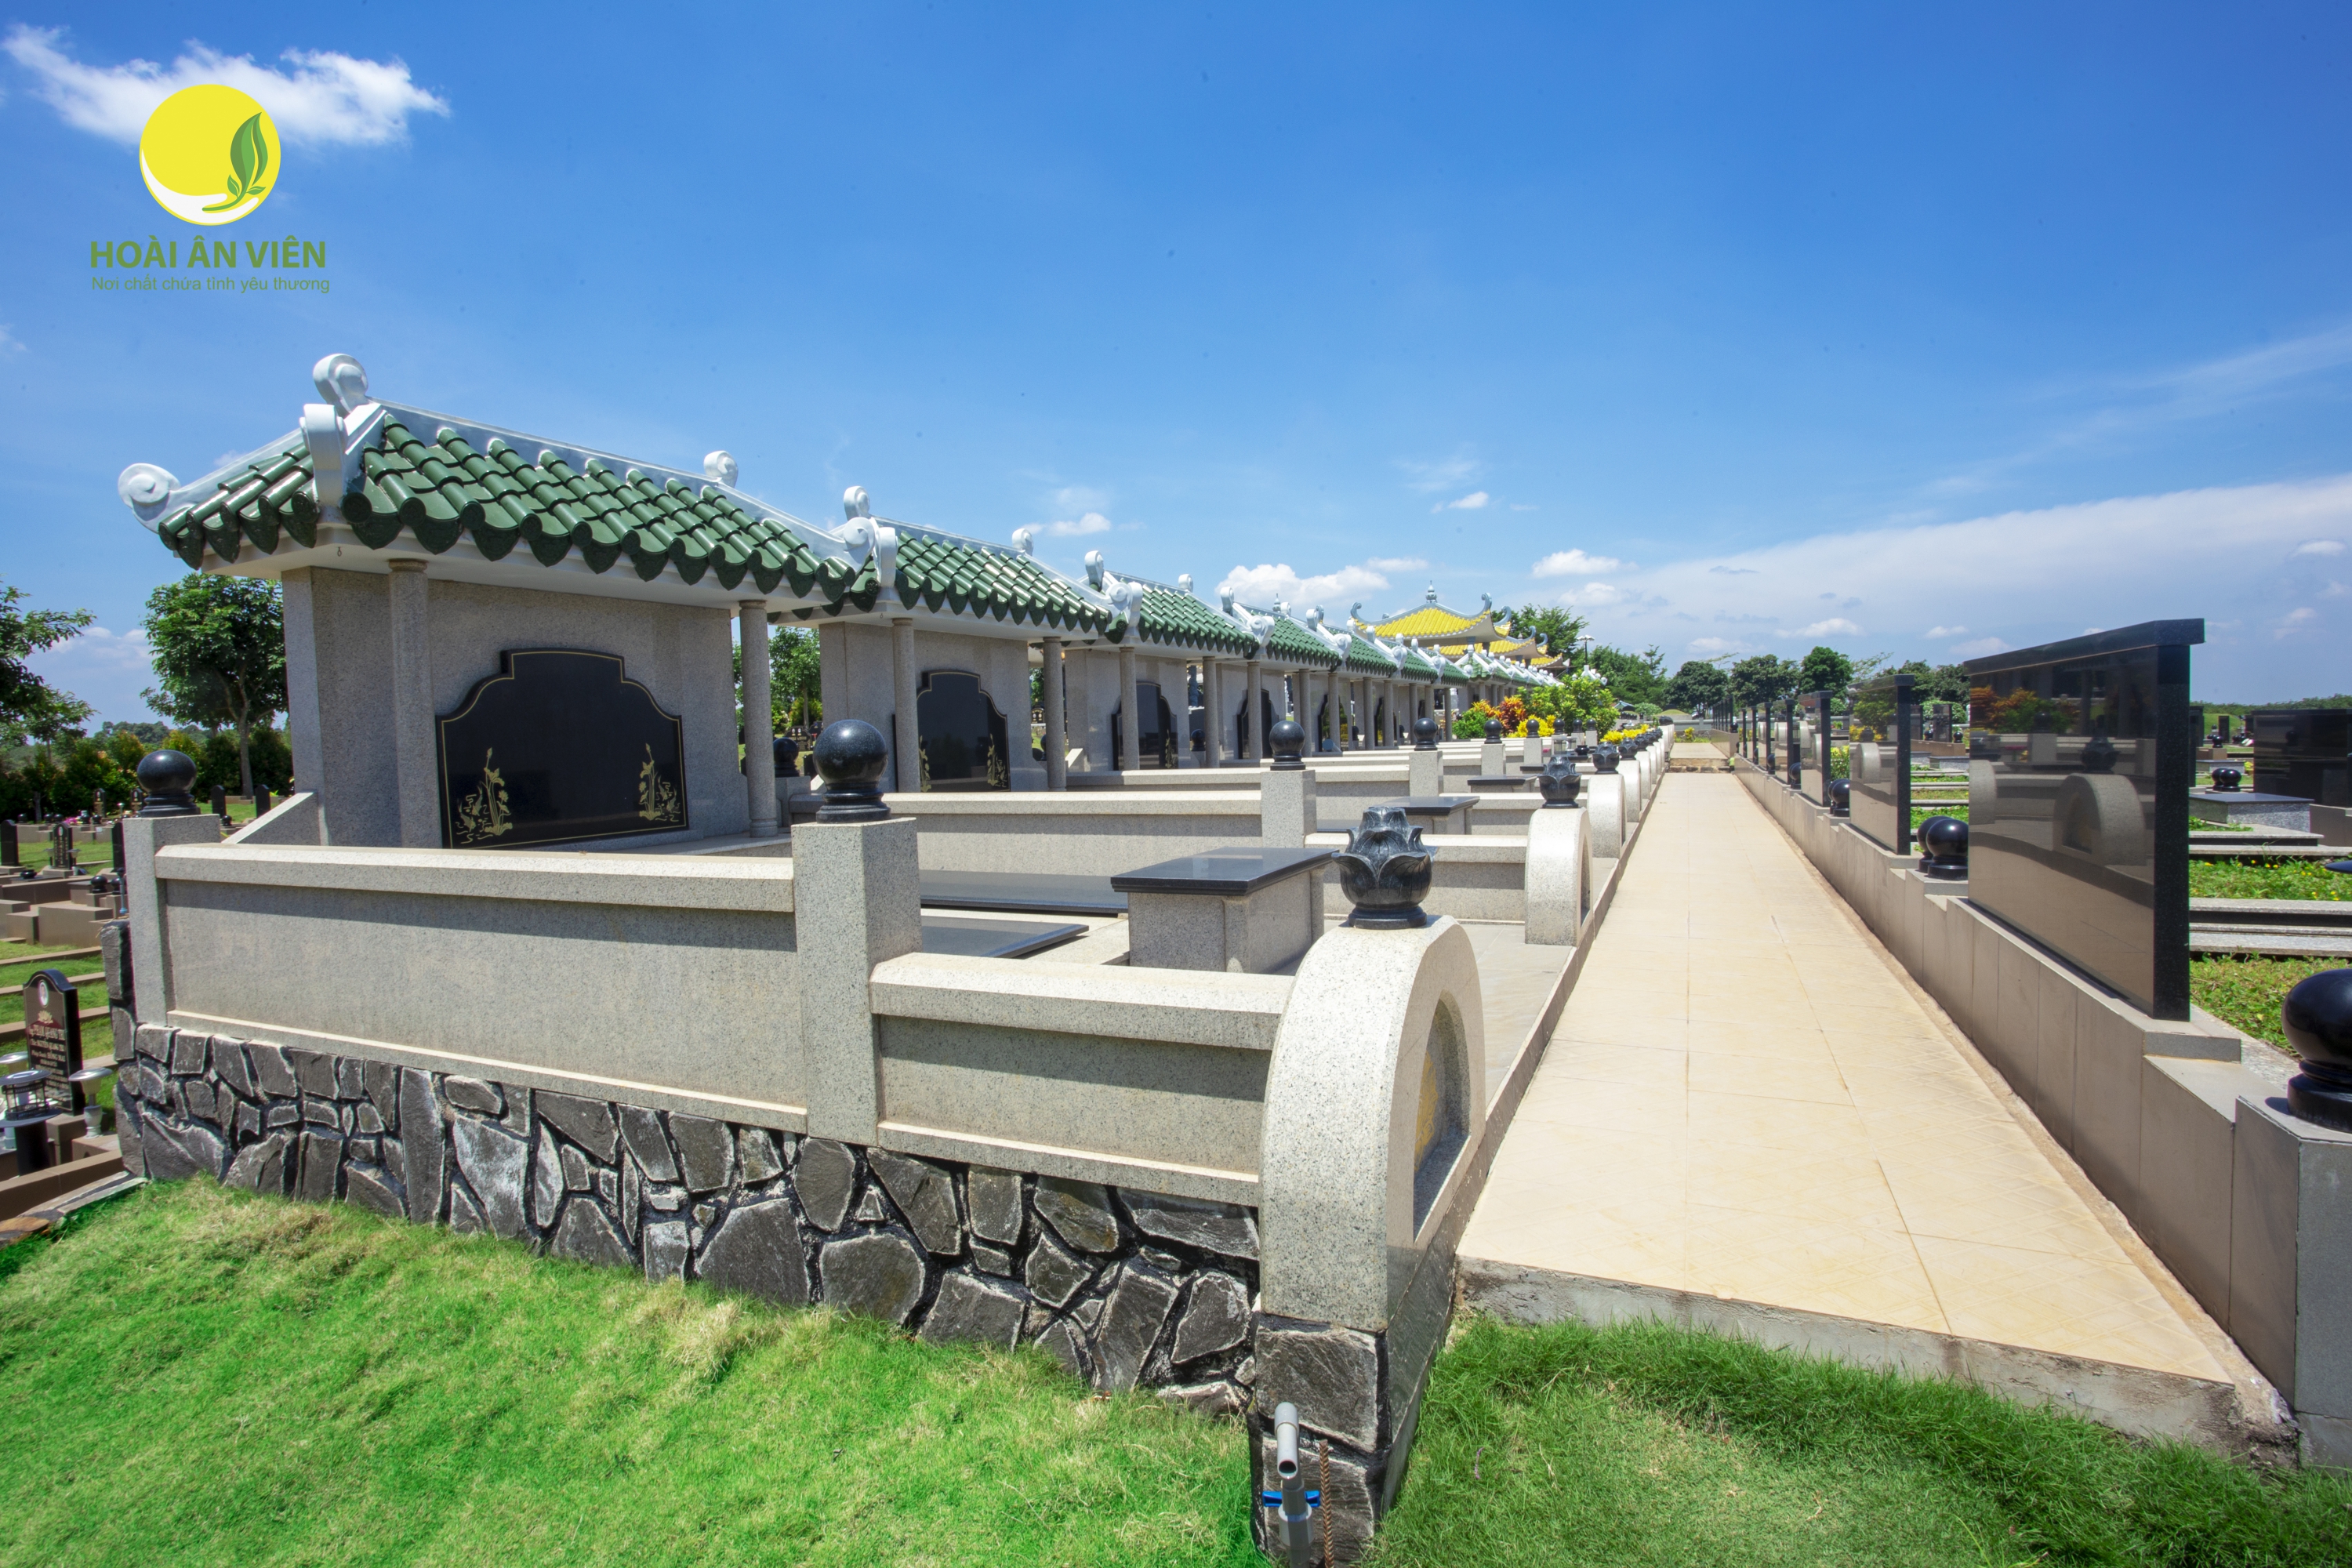 Các mẫu mộ gia đình tại Hoài Ân Viên nằm trong top 3 các mẫu lăng mộ đẹp nhất Việt Nam